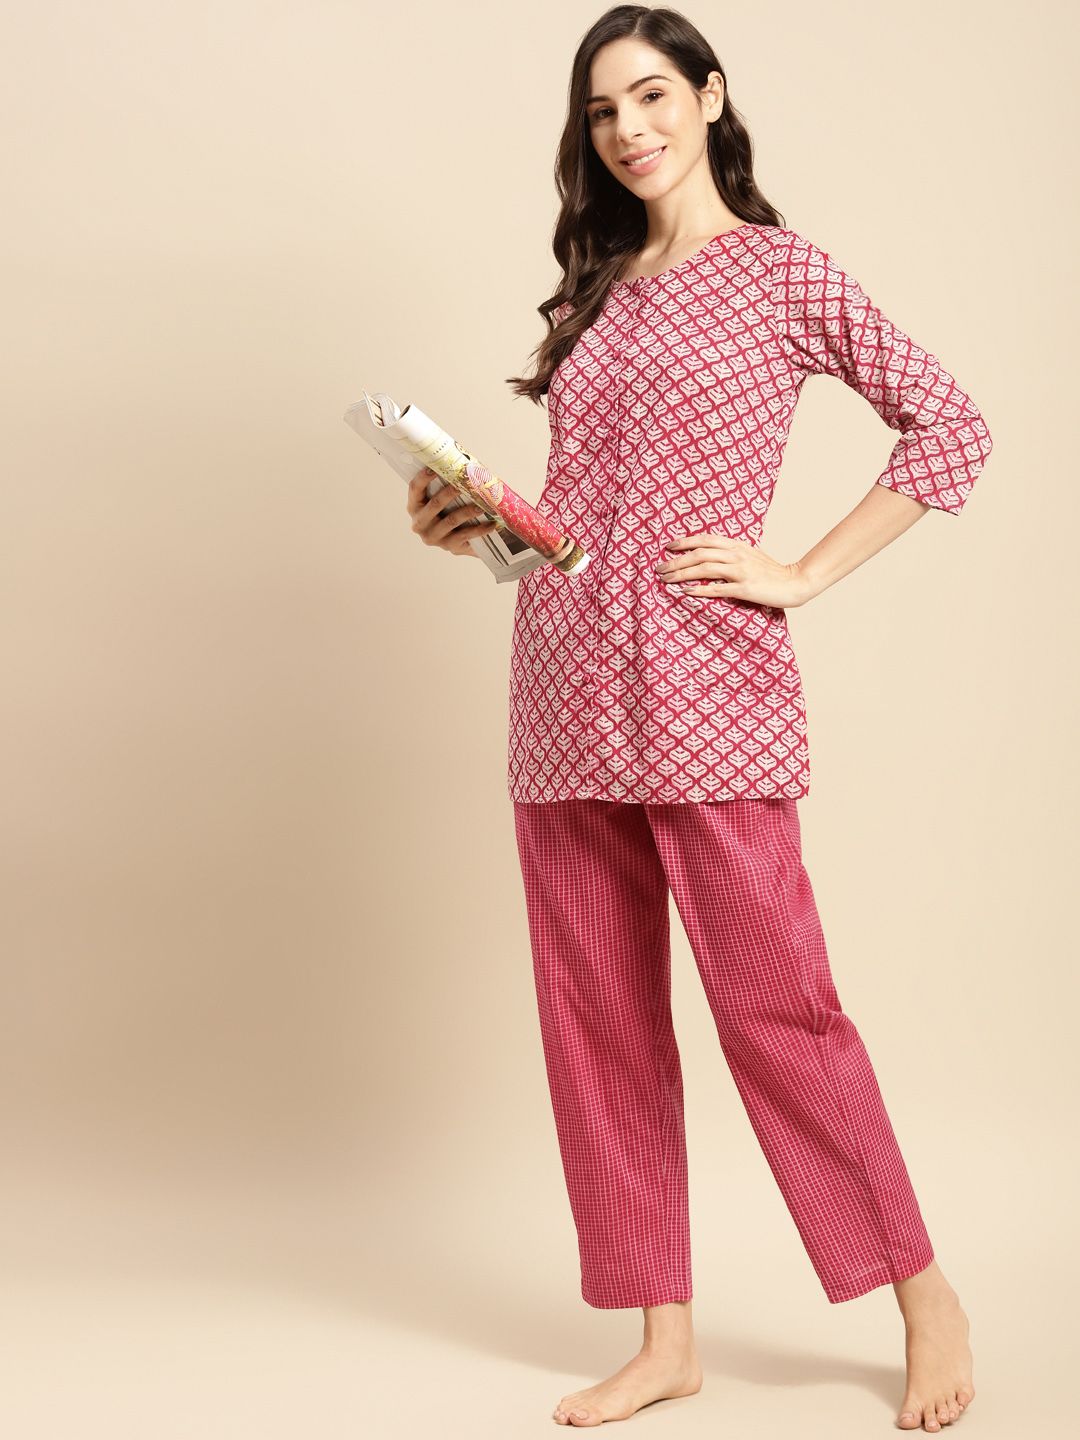 Prakrti Women Pink Printed Cotton Night suit Price in India